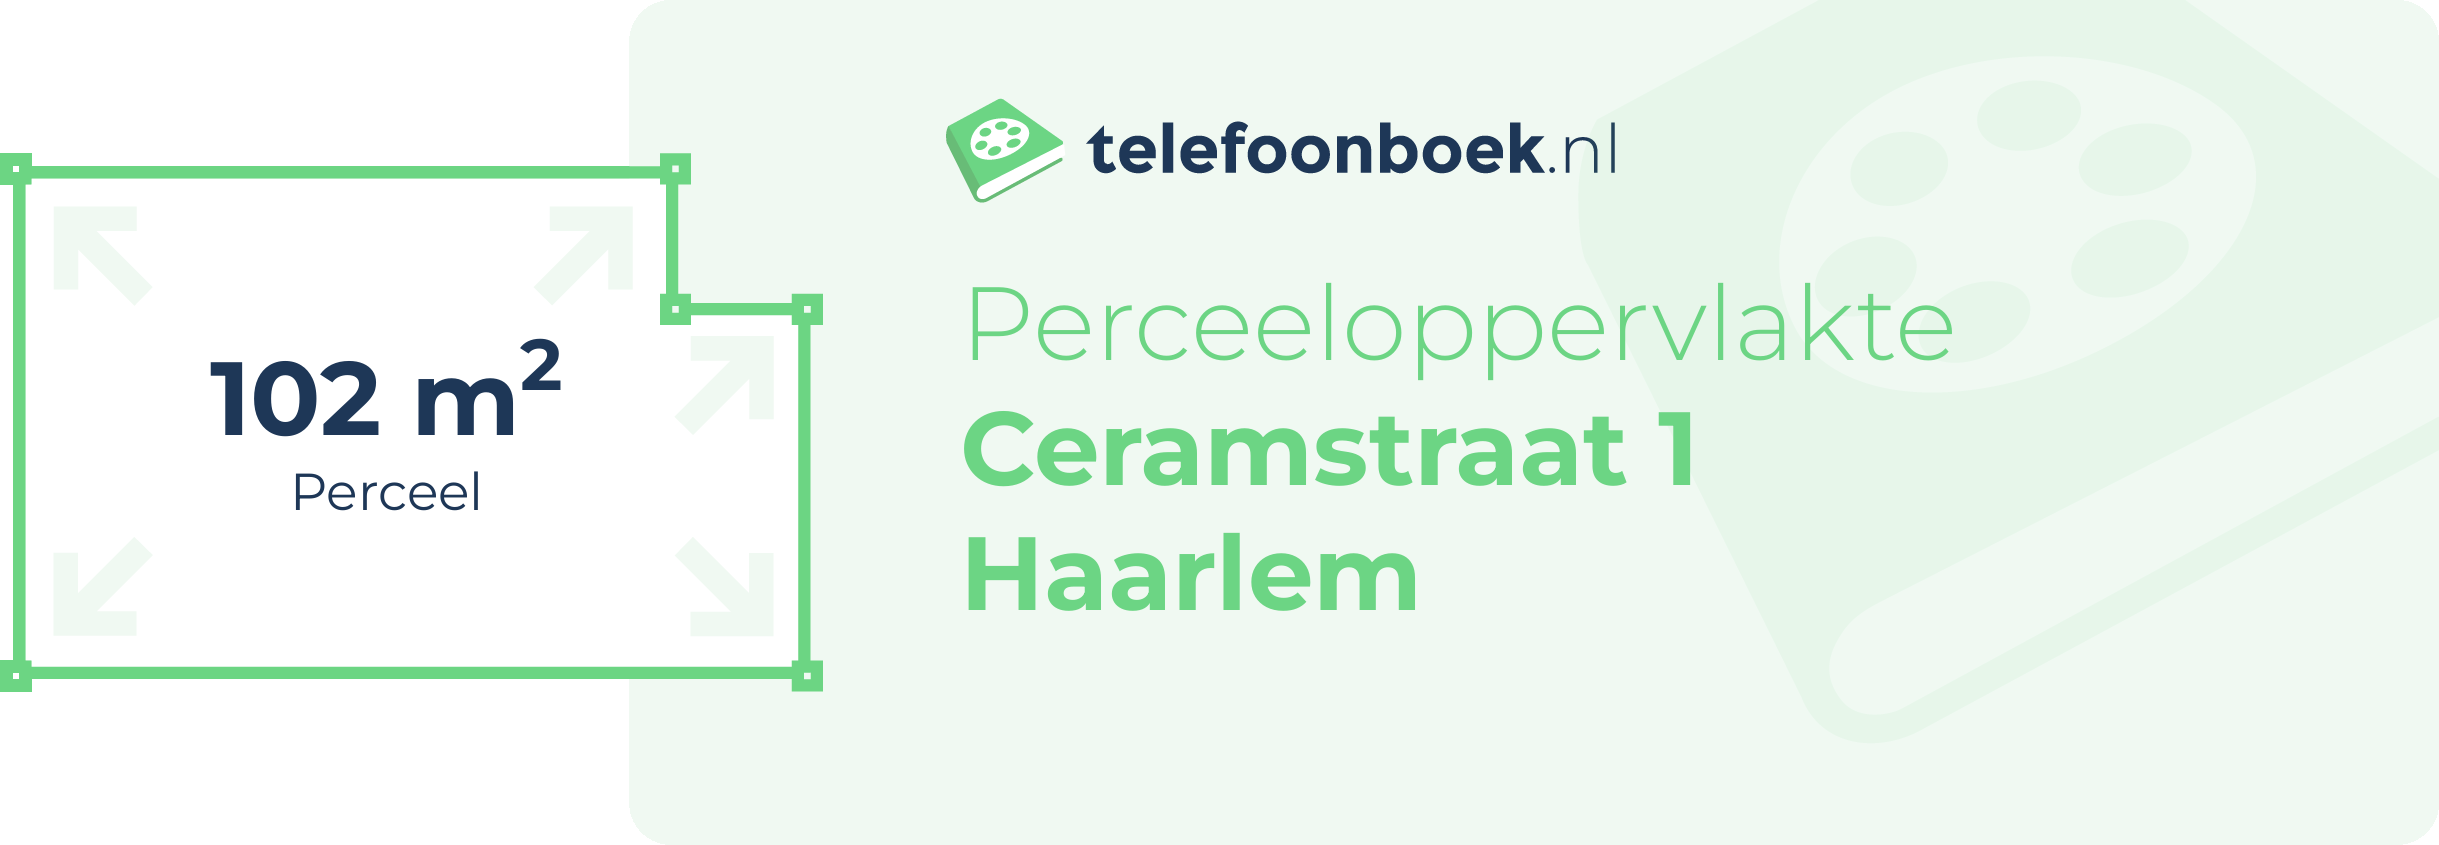 Perceeloppervlakte Ceramstraat 1 Haarlem